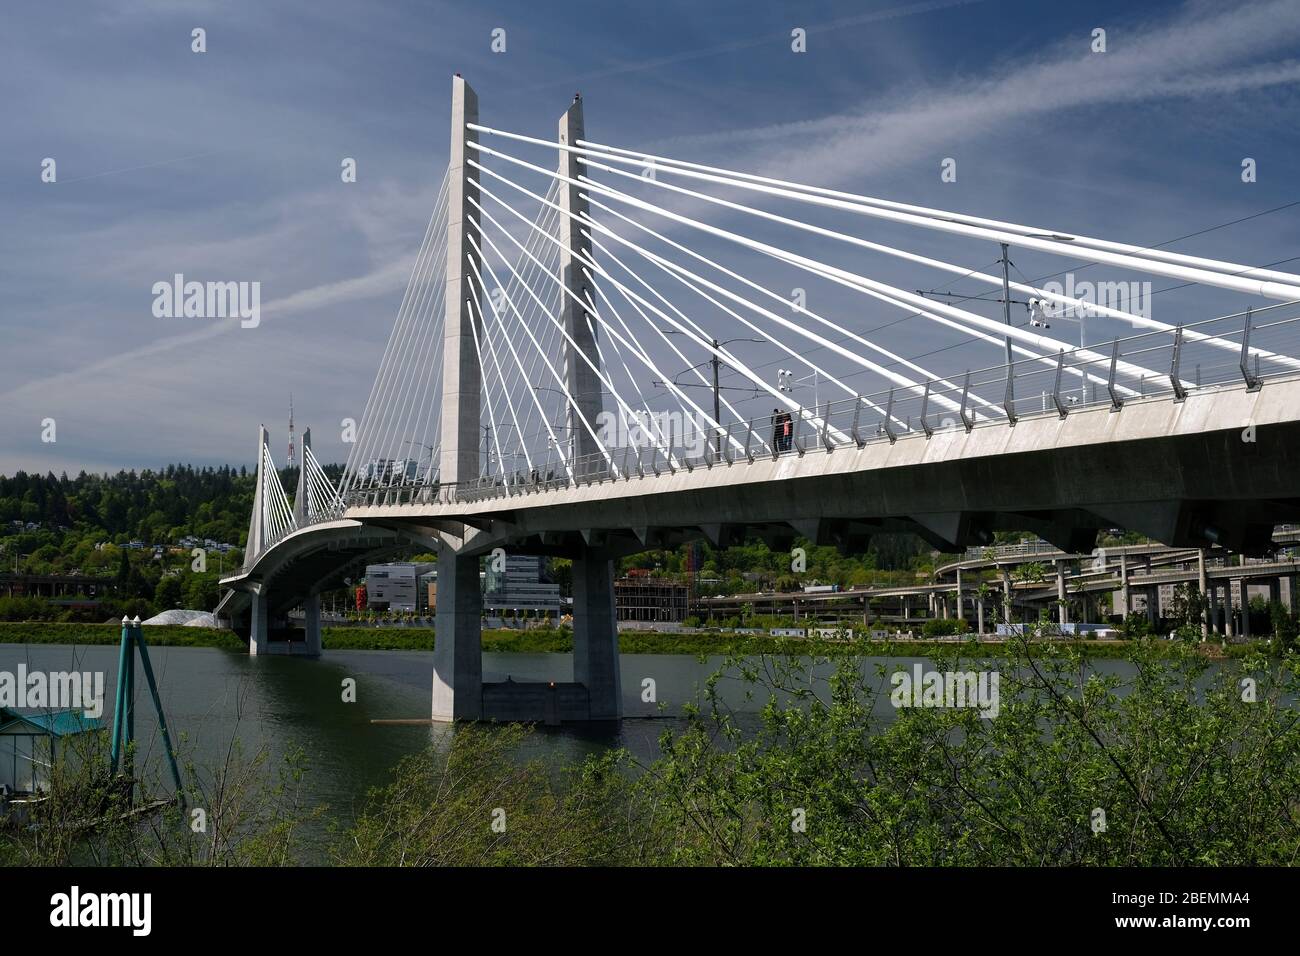 Le pont de Portland'sTilikum Crossing est resté sur la rivière Willamette pendant une journée d'été Banque D'Images